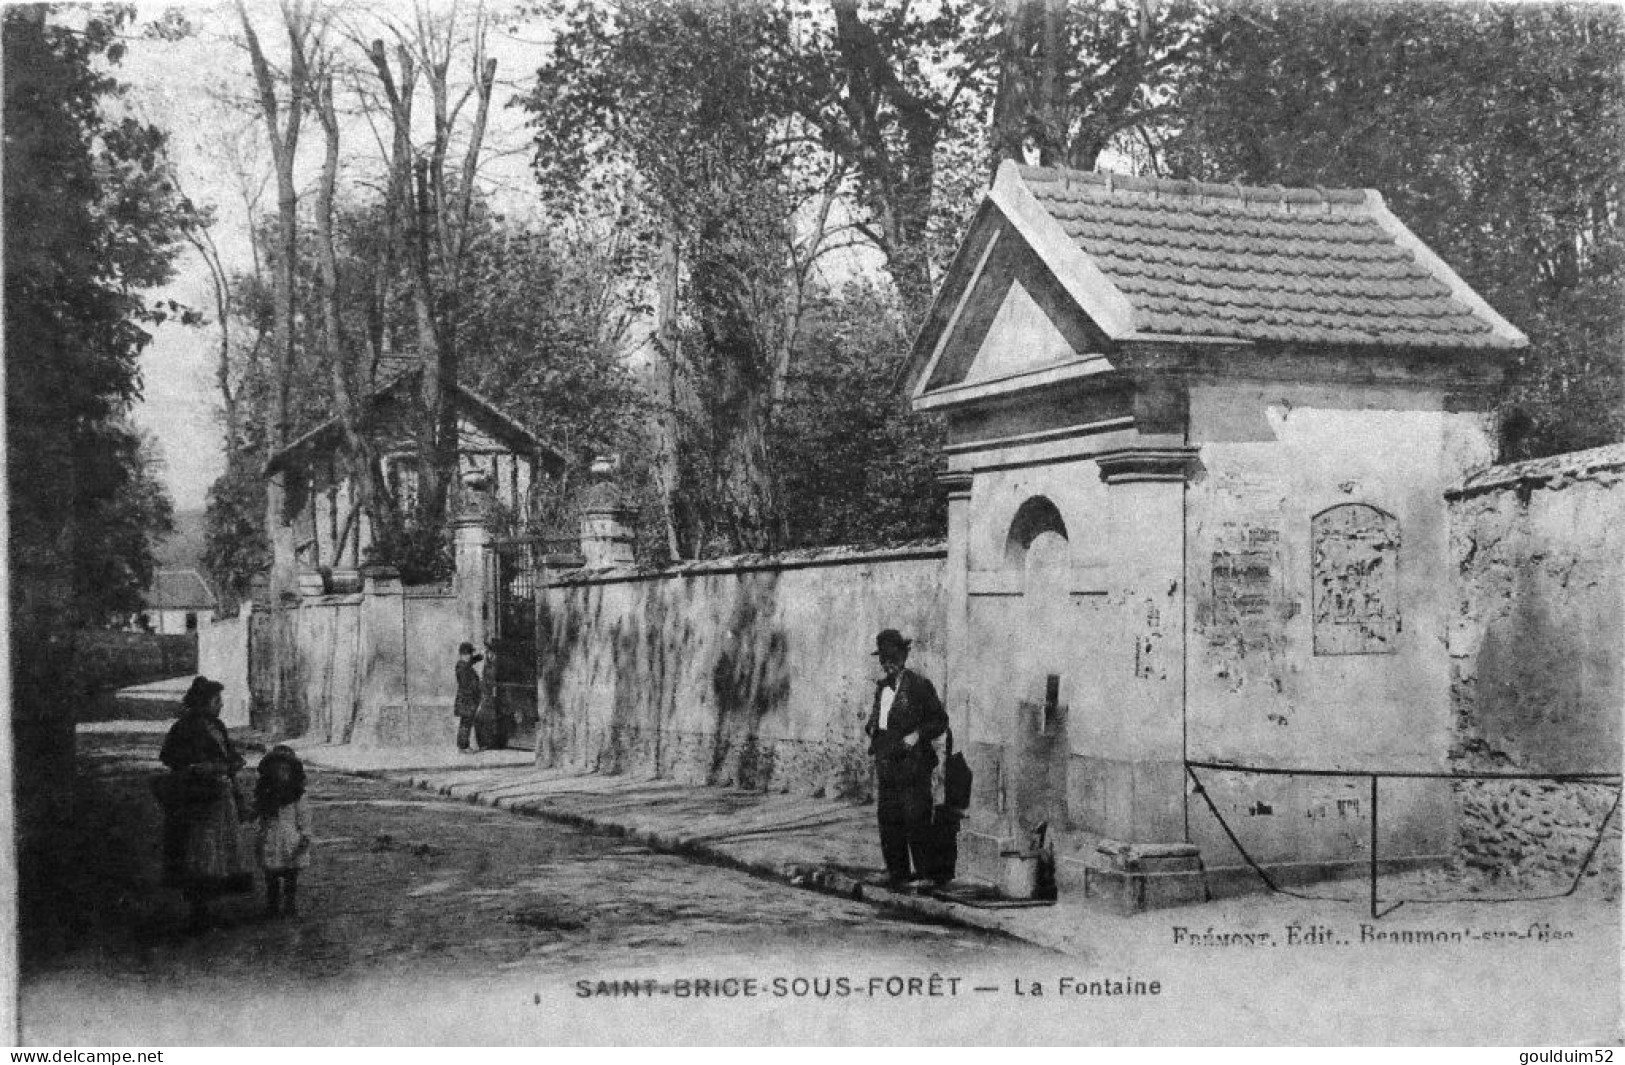 La Fontaine - Saint-Brice-sous-Forêt